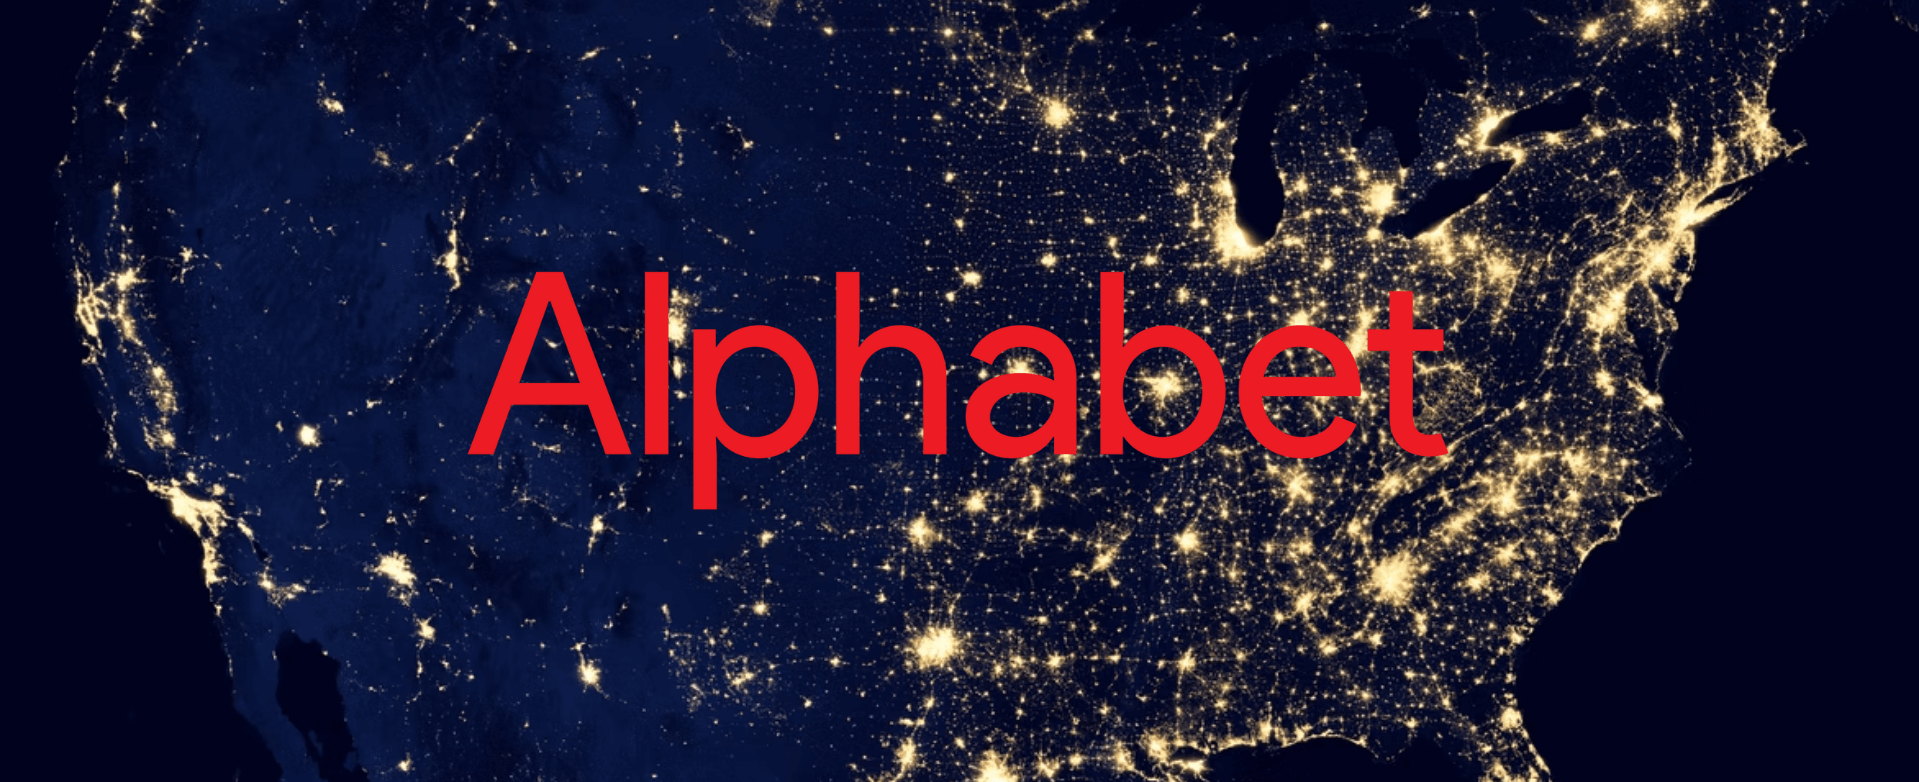 Alphabet Aktie Analyse Google Aktienanalyse Einleitungsbild